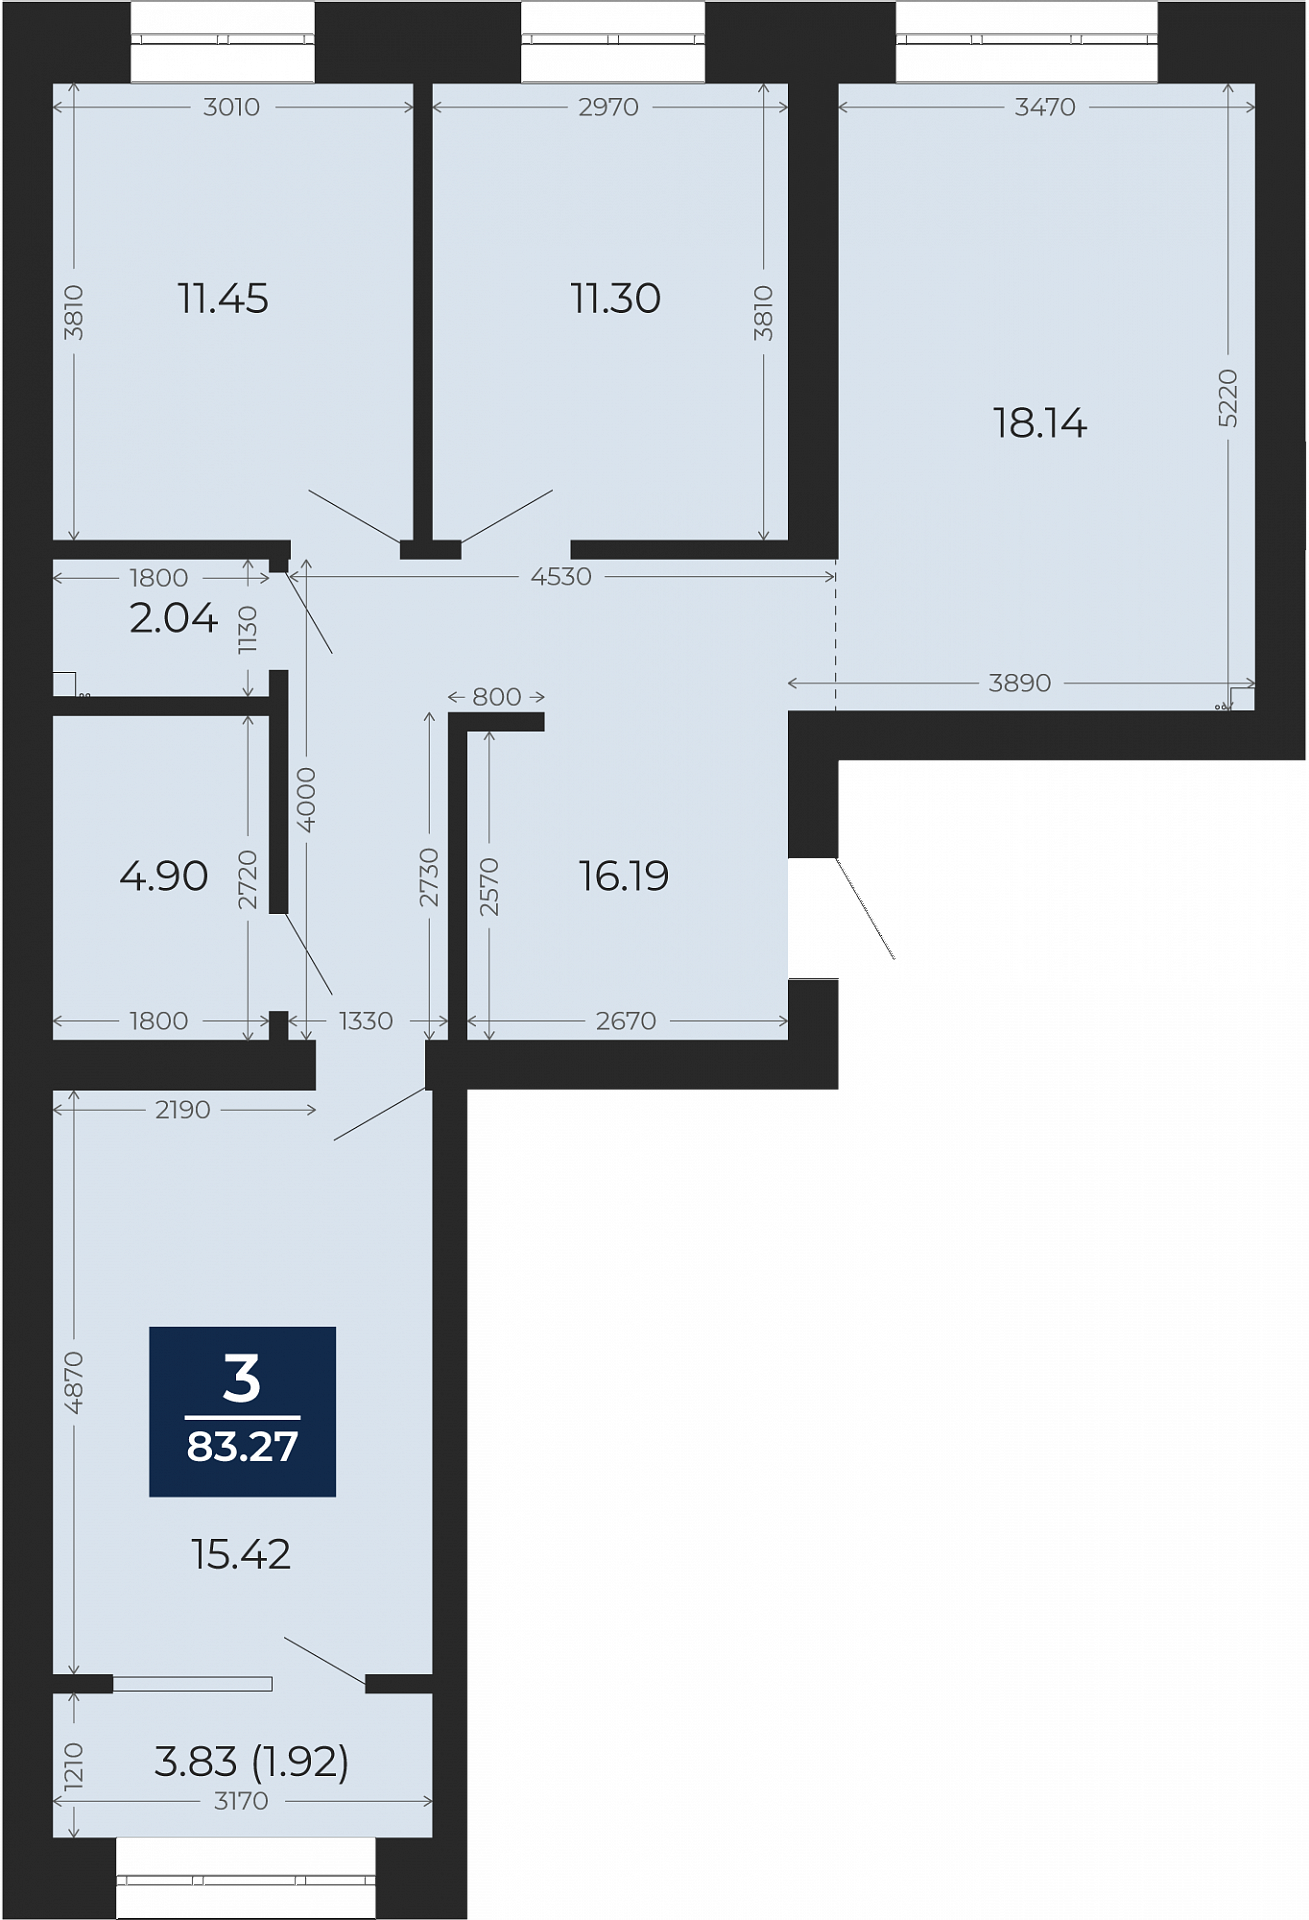 Квартира № 127, 3-комнатная, 83.27 кв. м, 10 этаж